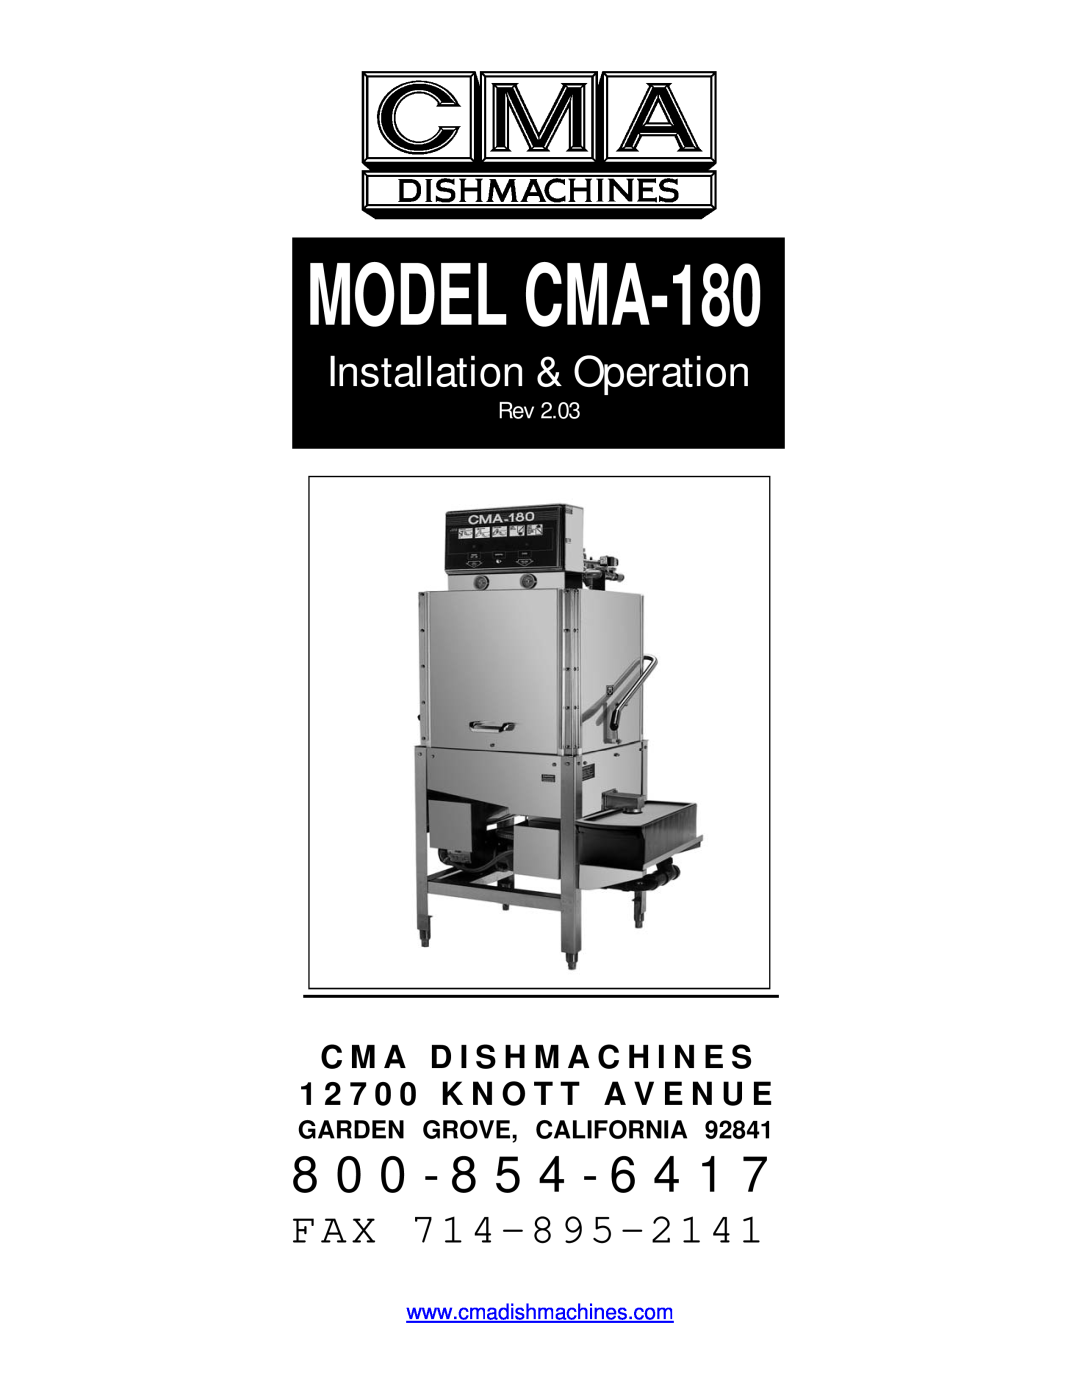 CMA Dishmachines CMA-180 manual C M A D I S H M A C H I N E S, 1 2 7 0 0 K N O T T A V E N U E, Garden Grove, California 